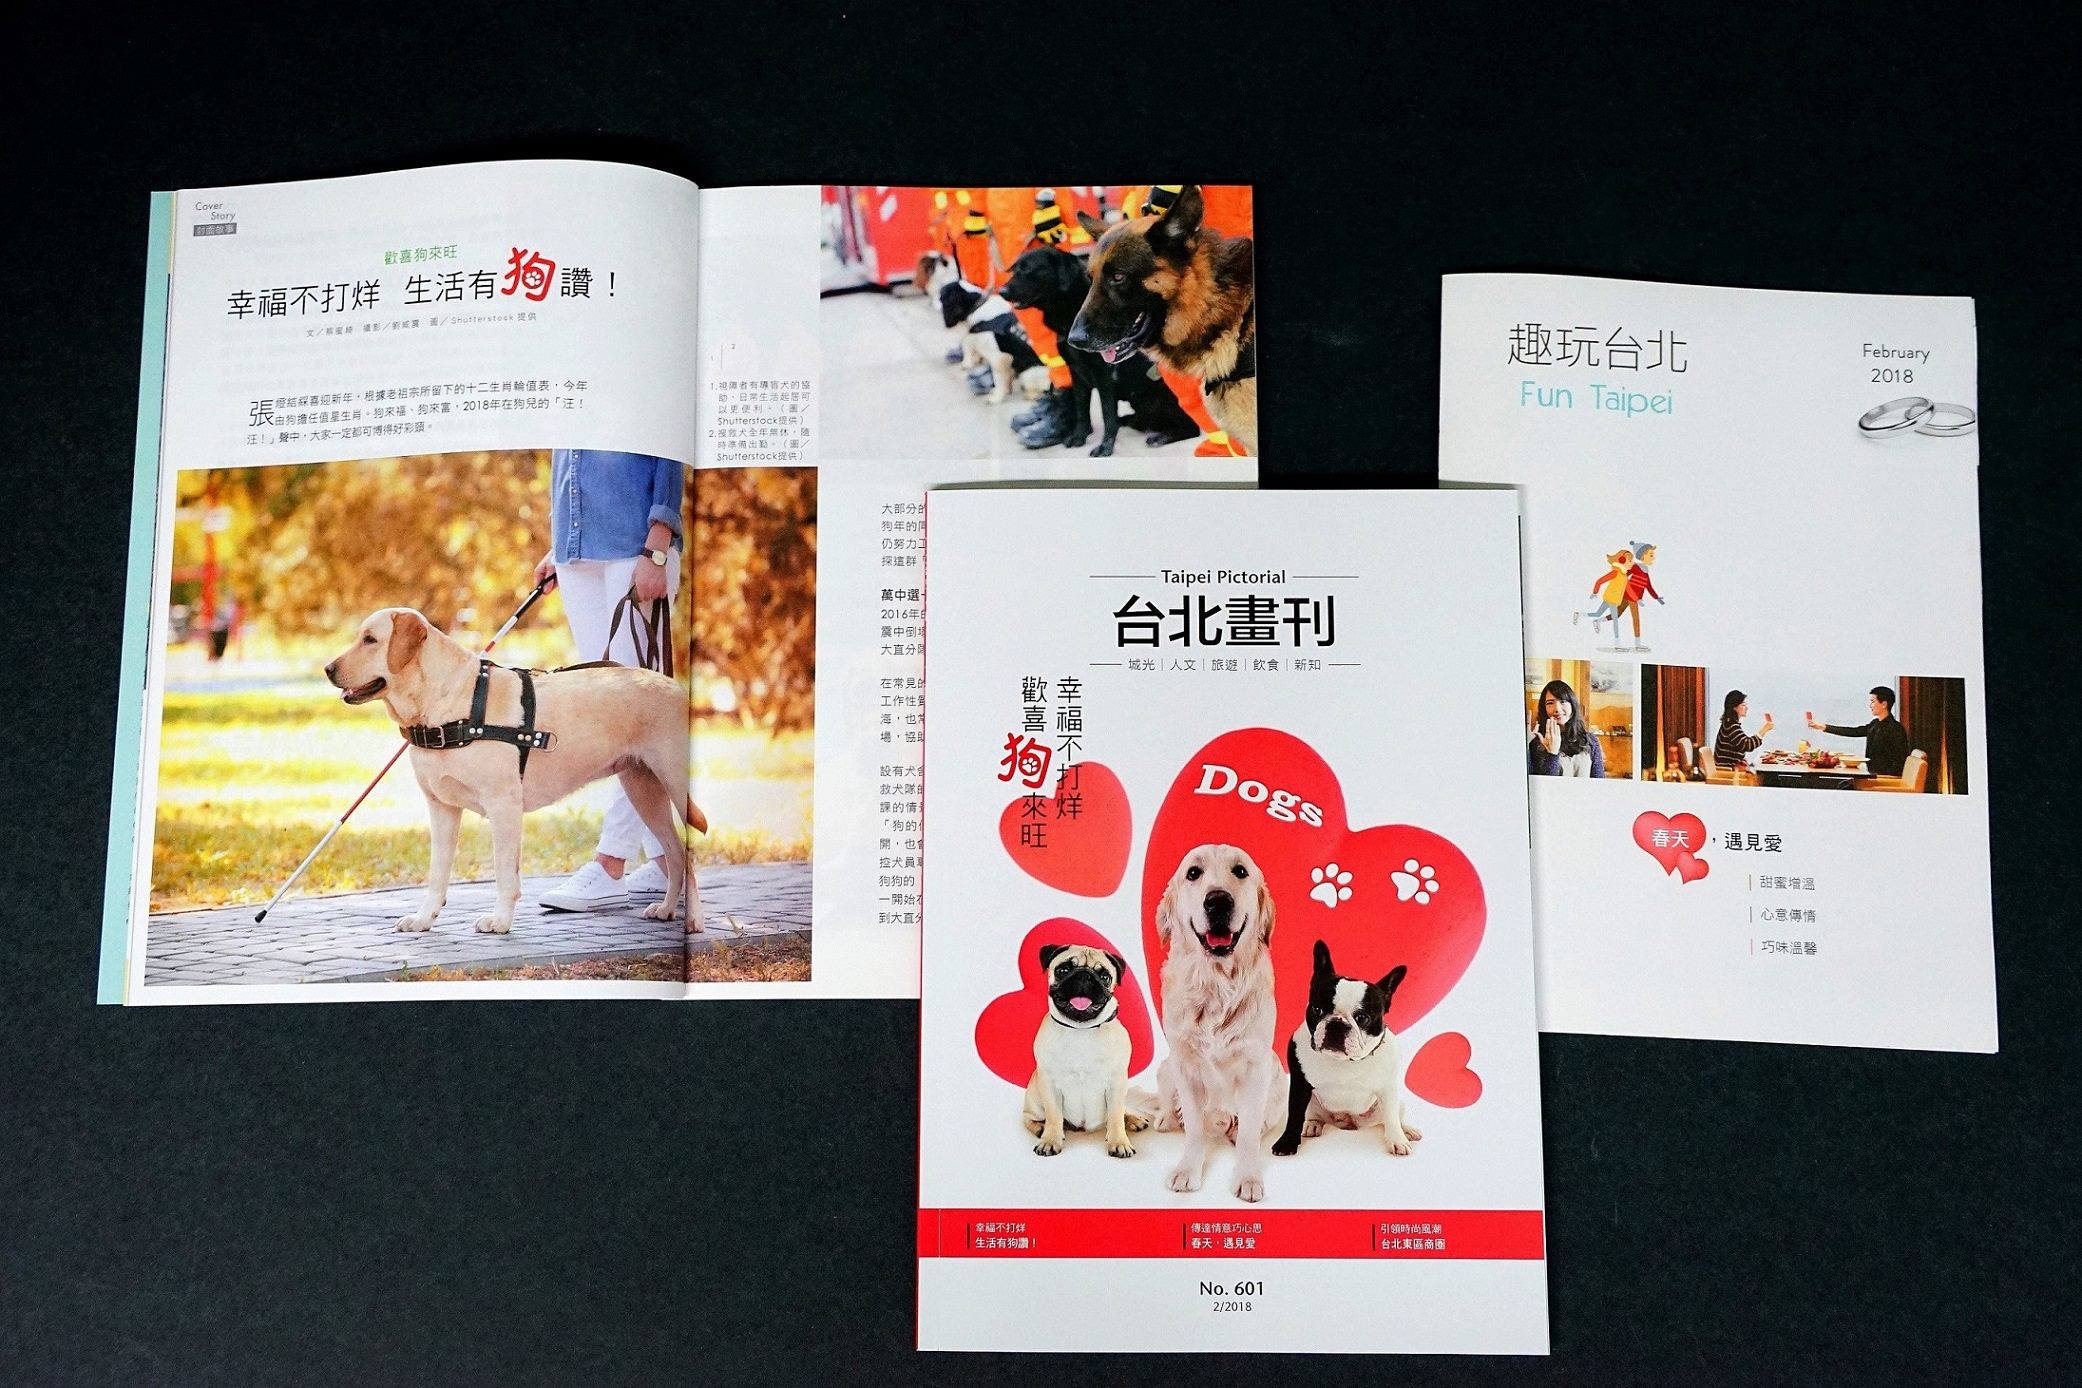  本期《台北畫刊》以今年的值年生肖「狗」為主角